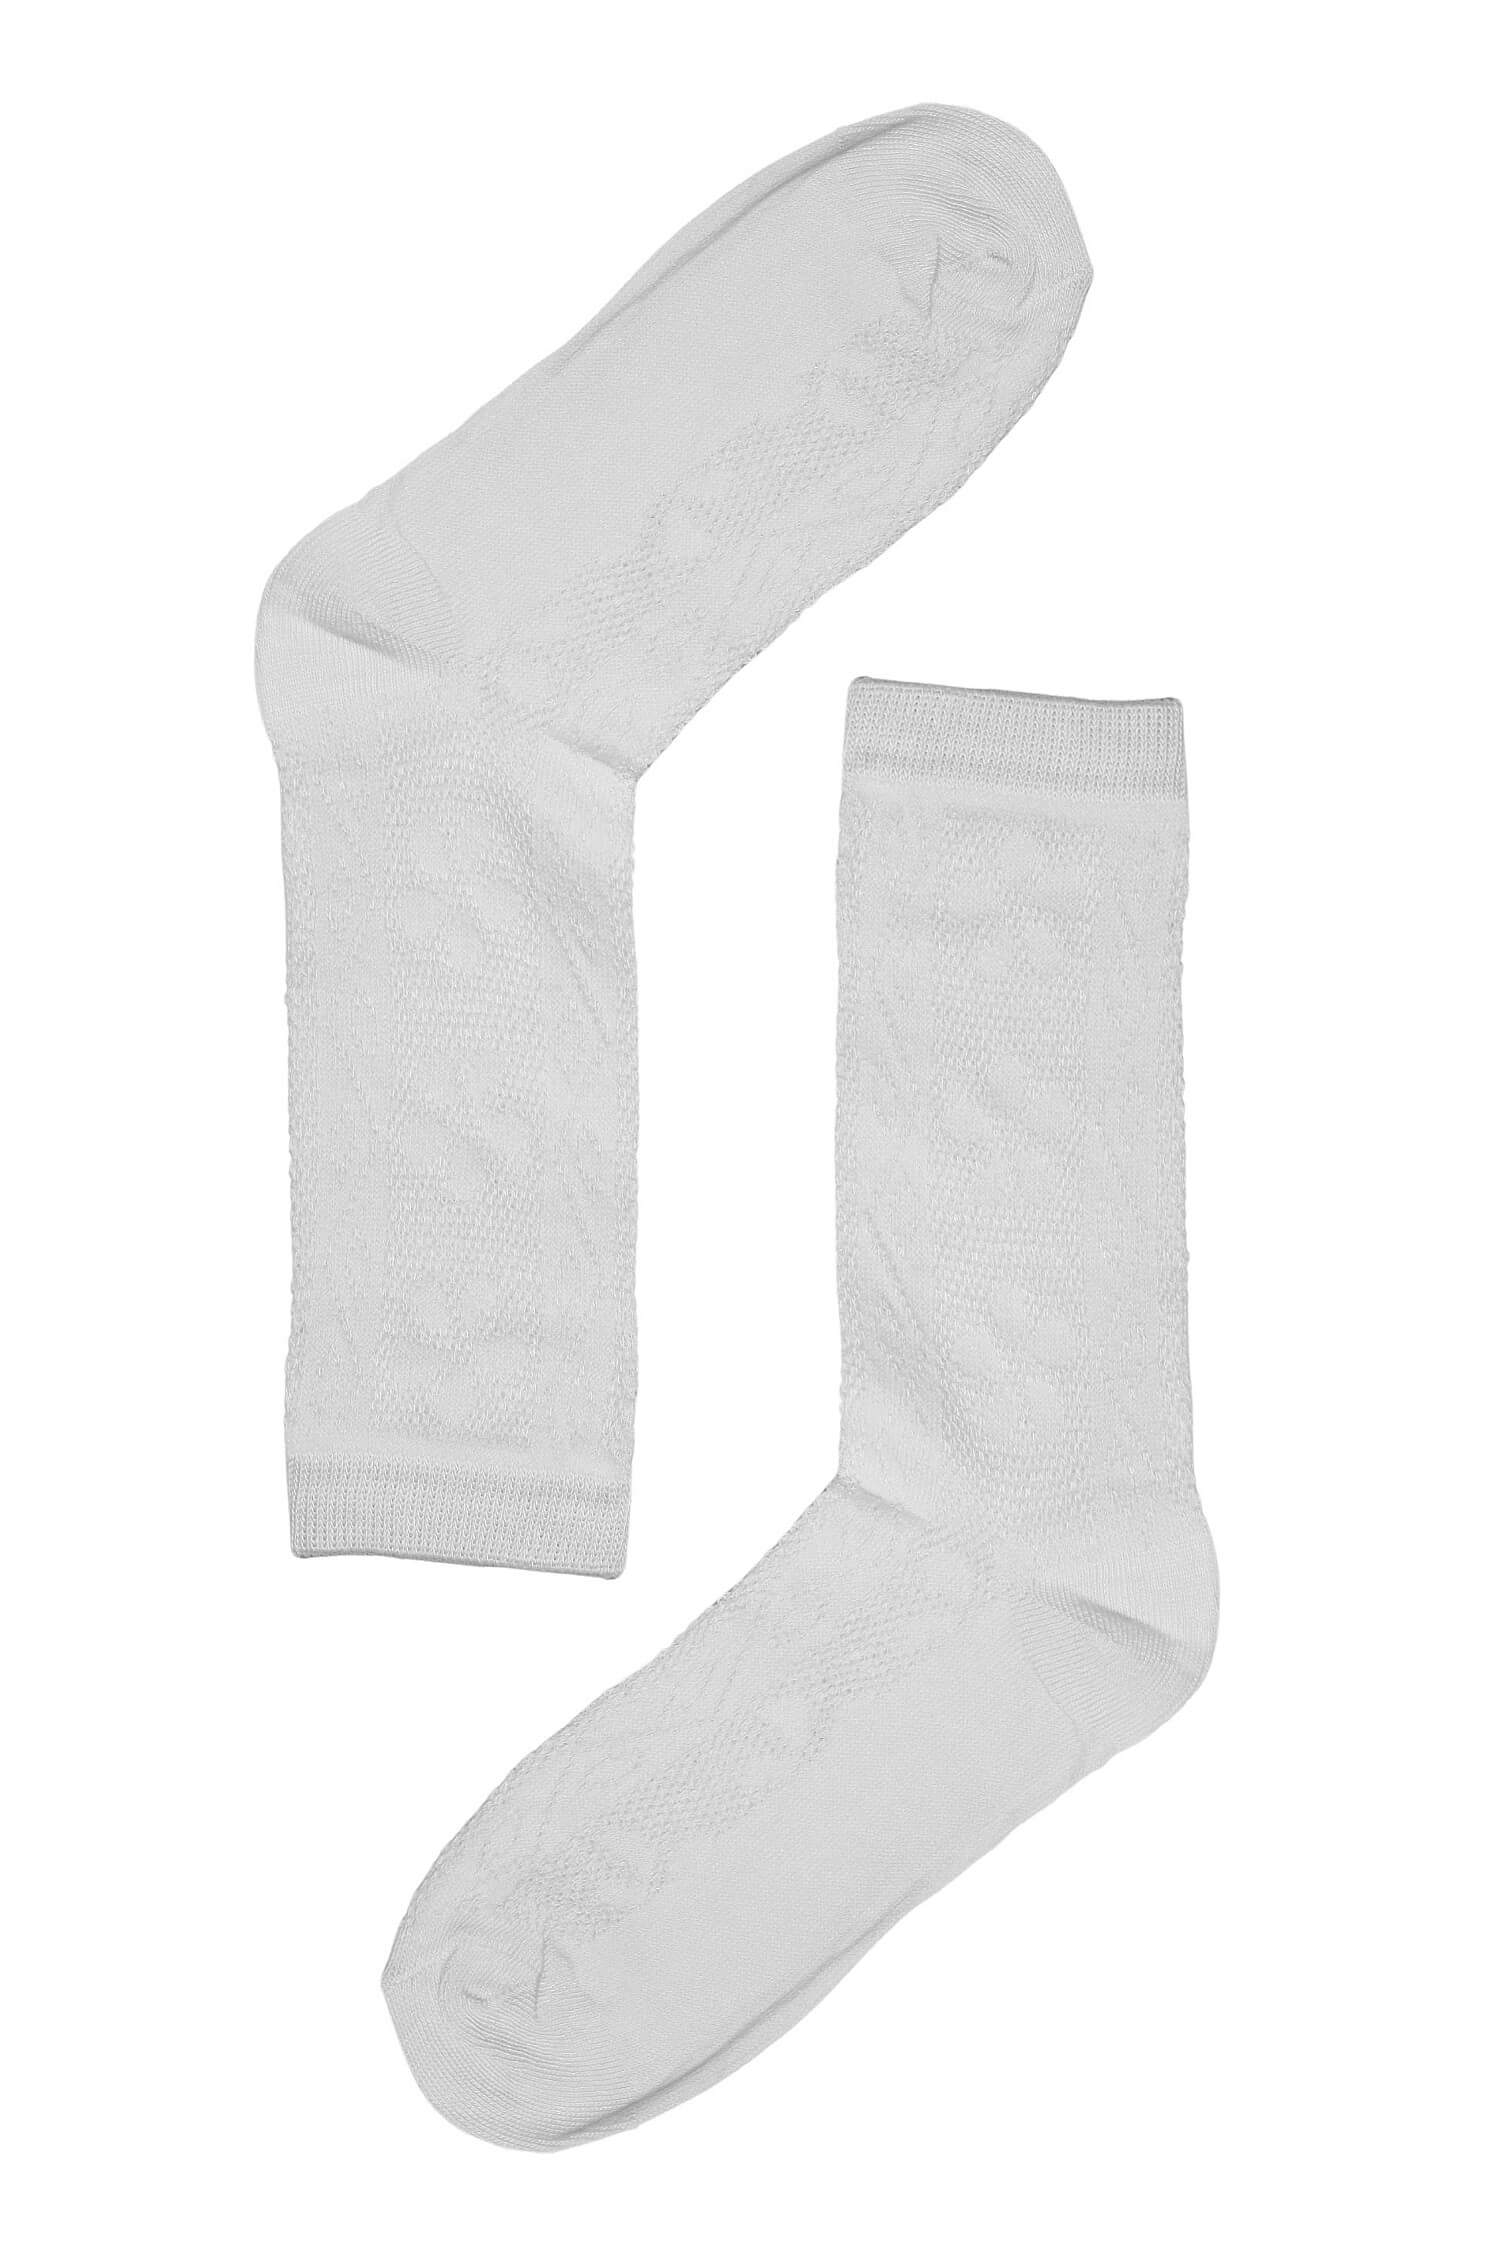 Vzorované dámské ponožky bavlna SK-236 35-38 bílá